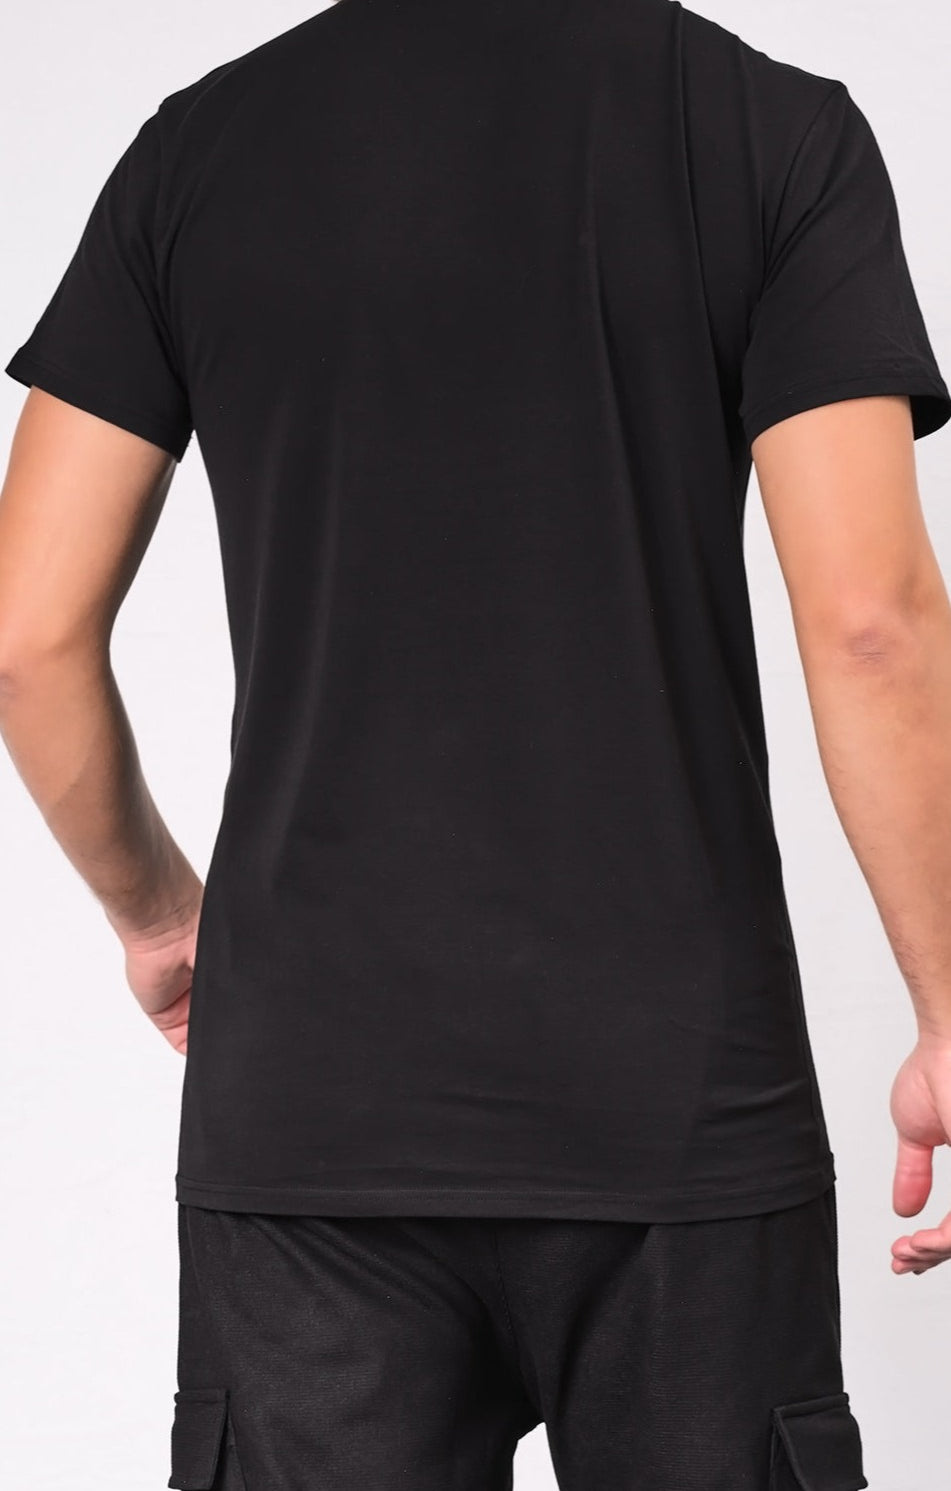  QL BAZ Longline T-Shirt Black (Pack of 2) - QABA'IL,